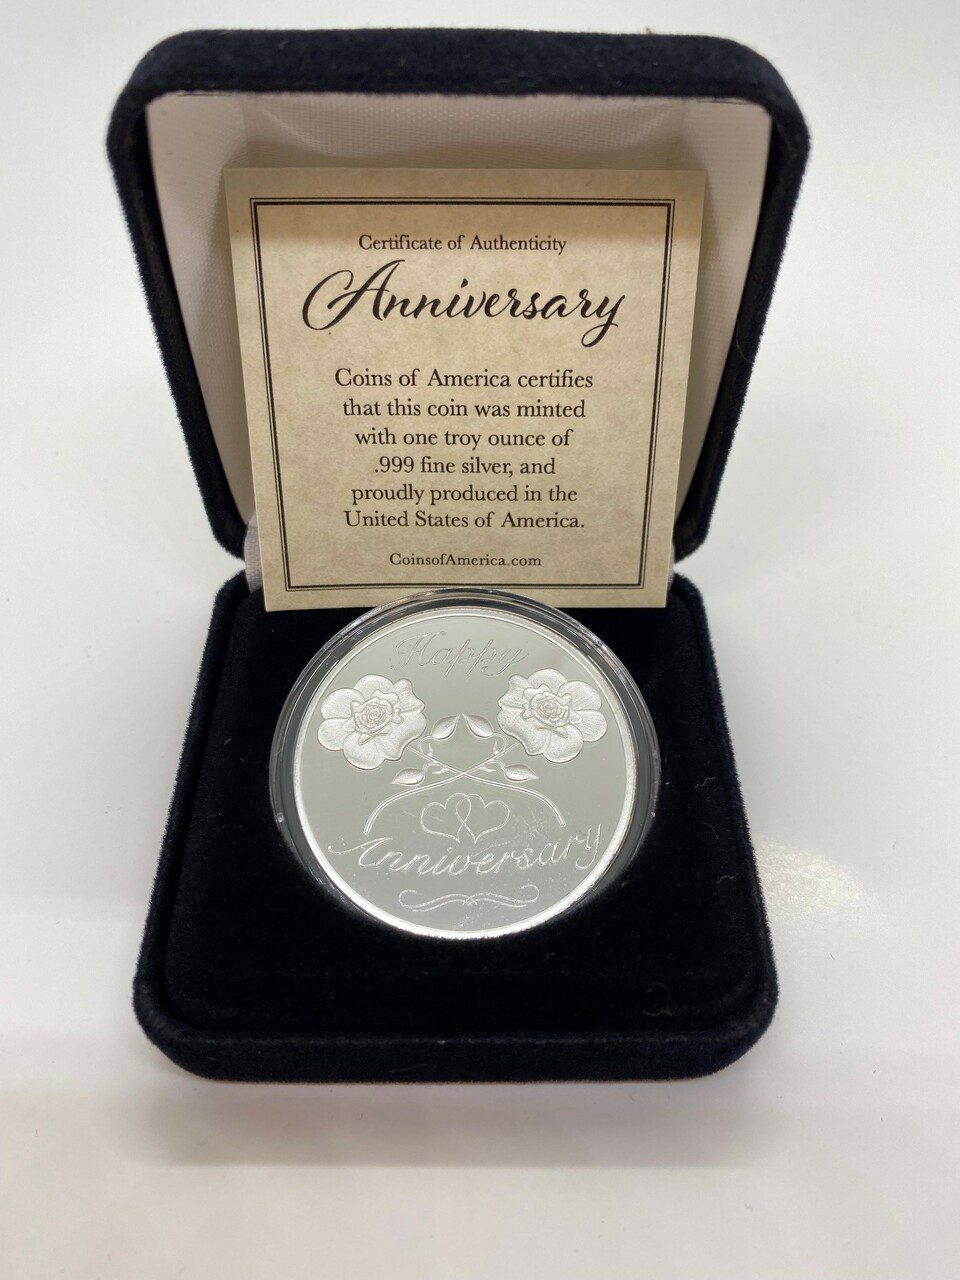 Anniversary Commemorative Coin - NEW DESIGN